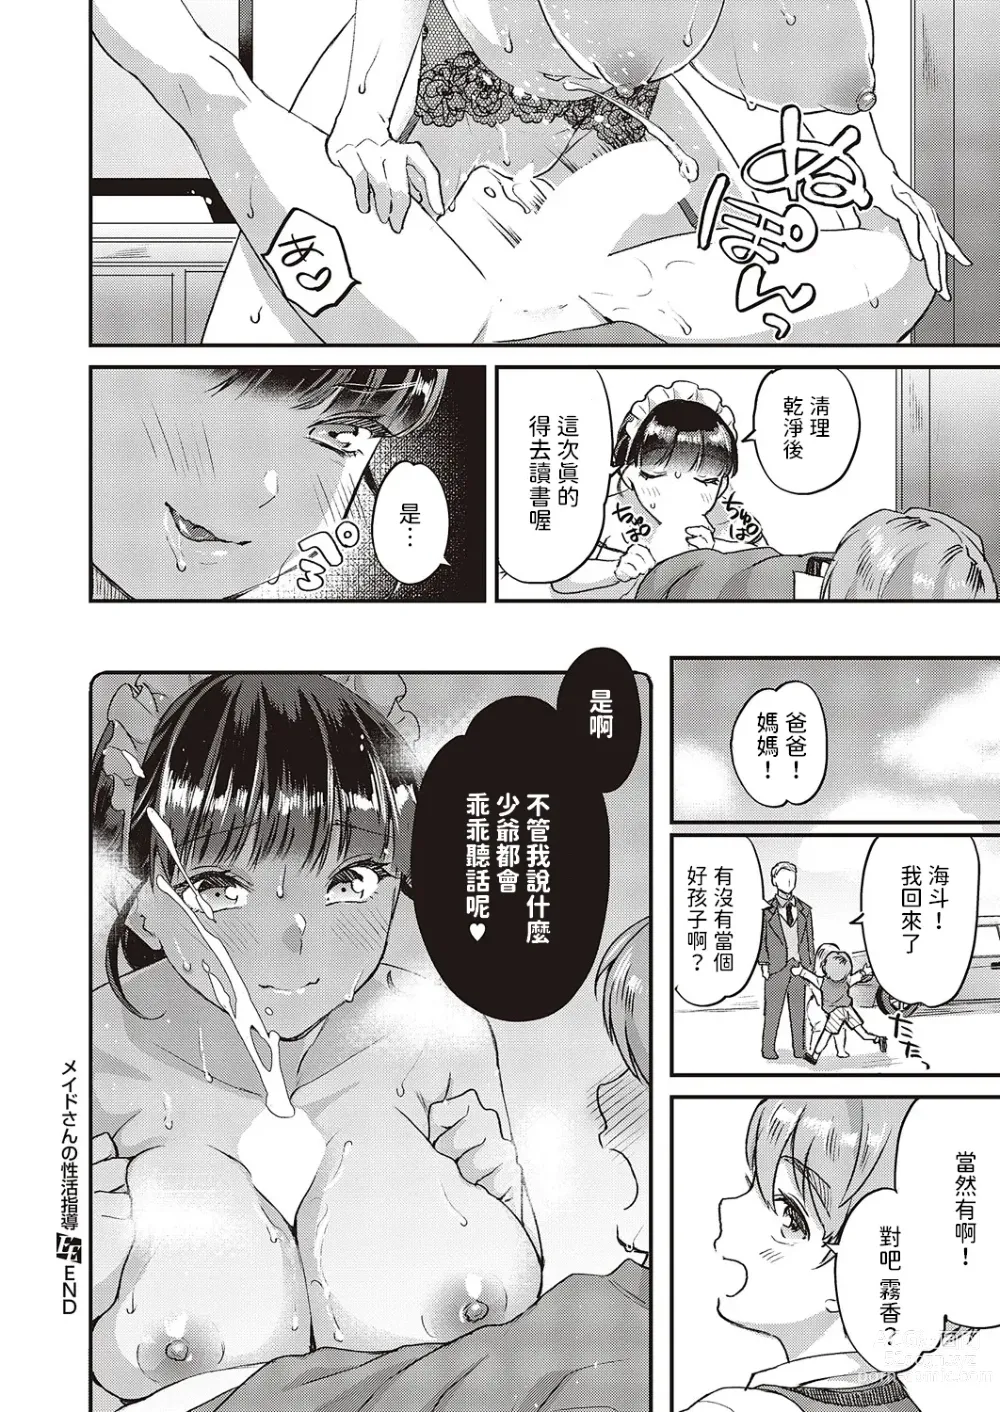 Page 20 of manga Maid-san no Seikatsu Shidou